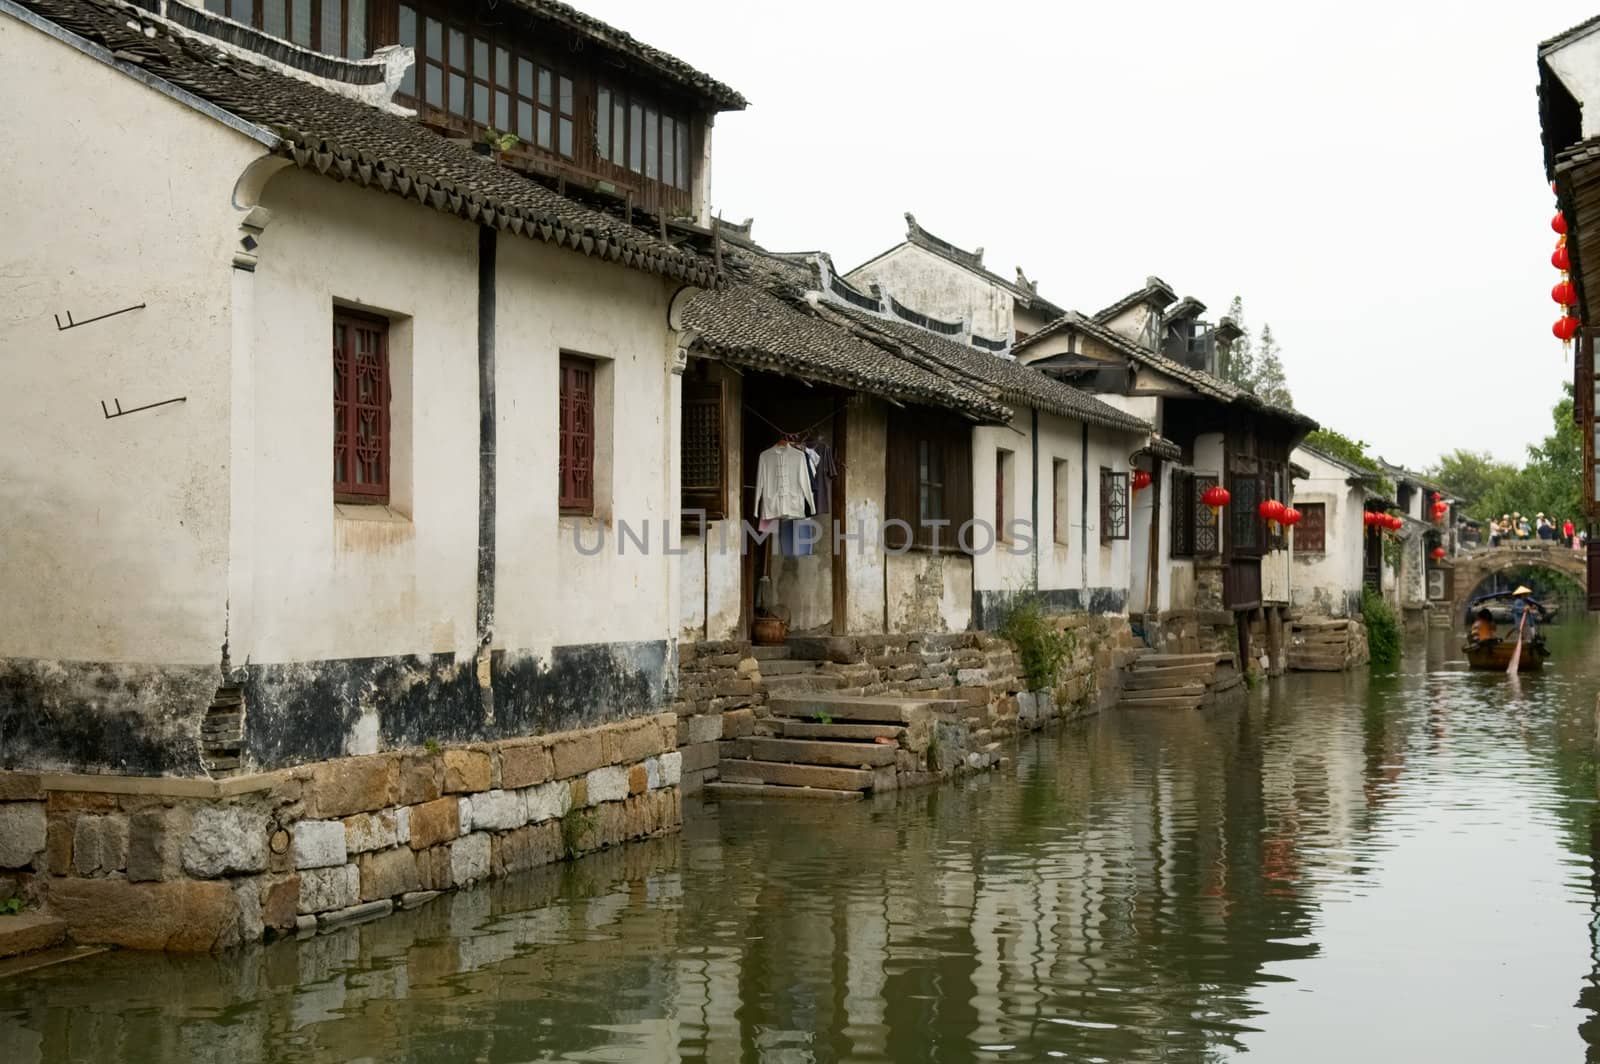 The water town in China, Zhou Zhuang